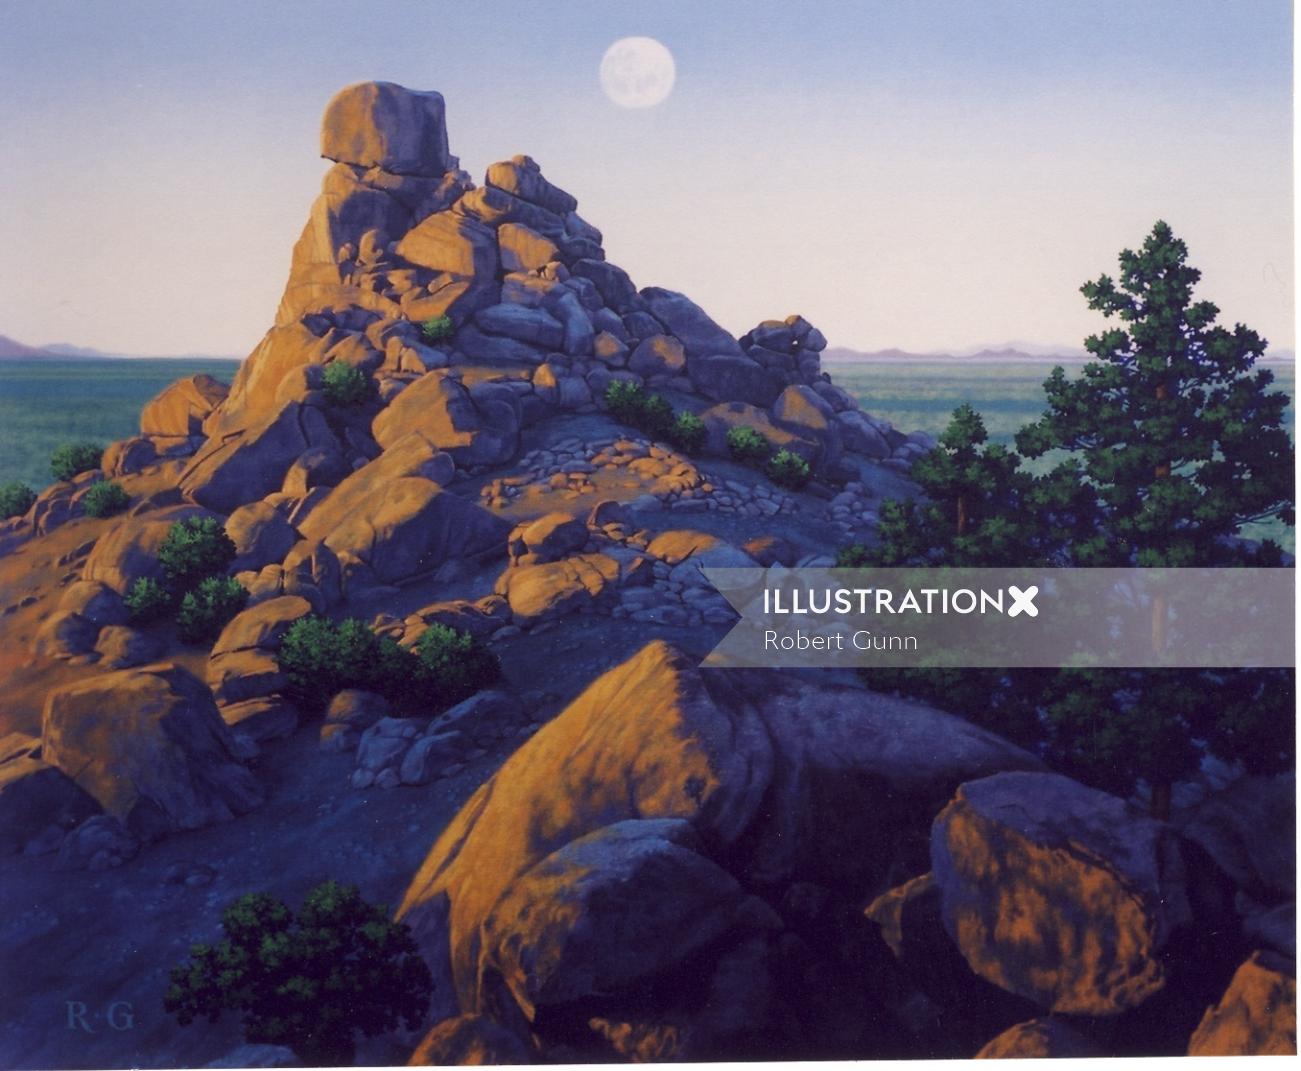 Full moon rising over desert landscape by Robert Gunn